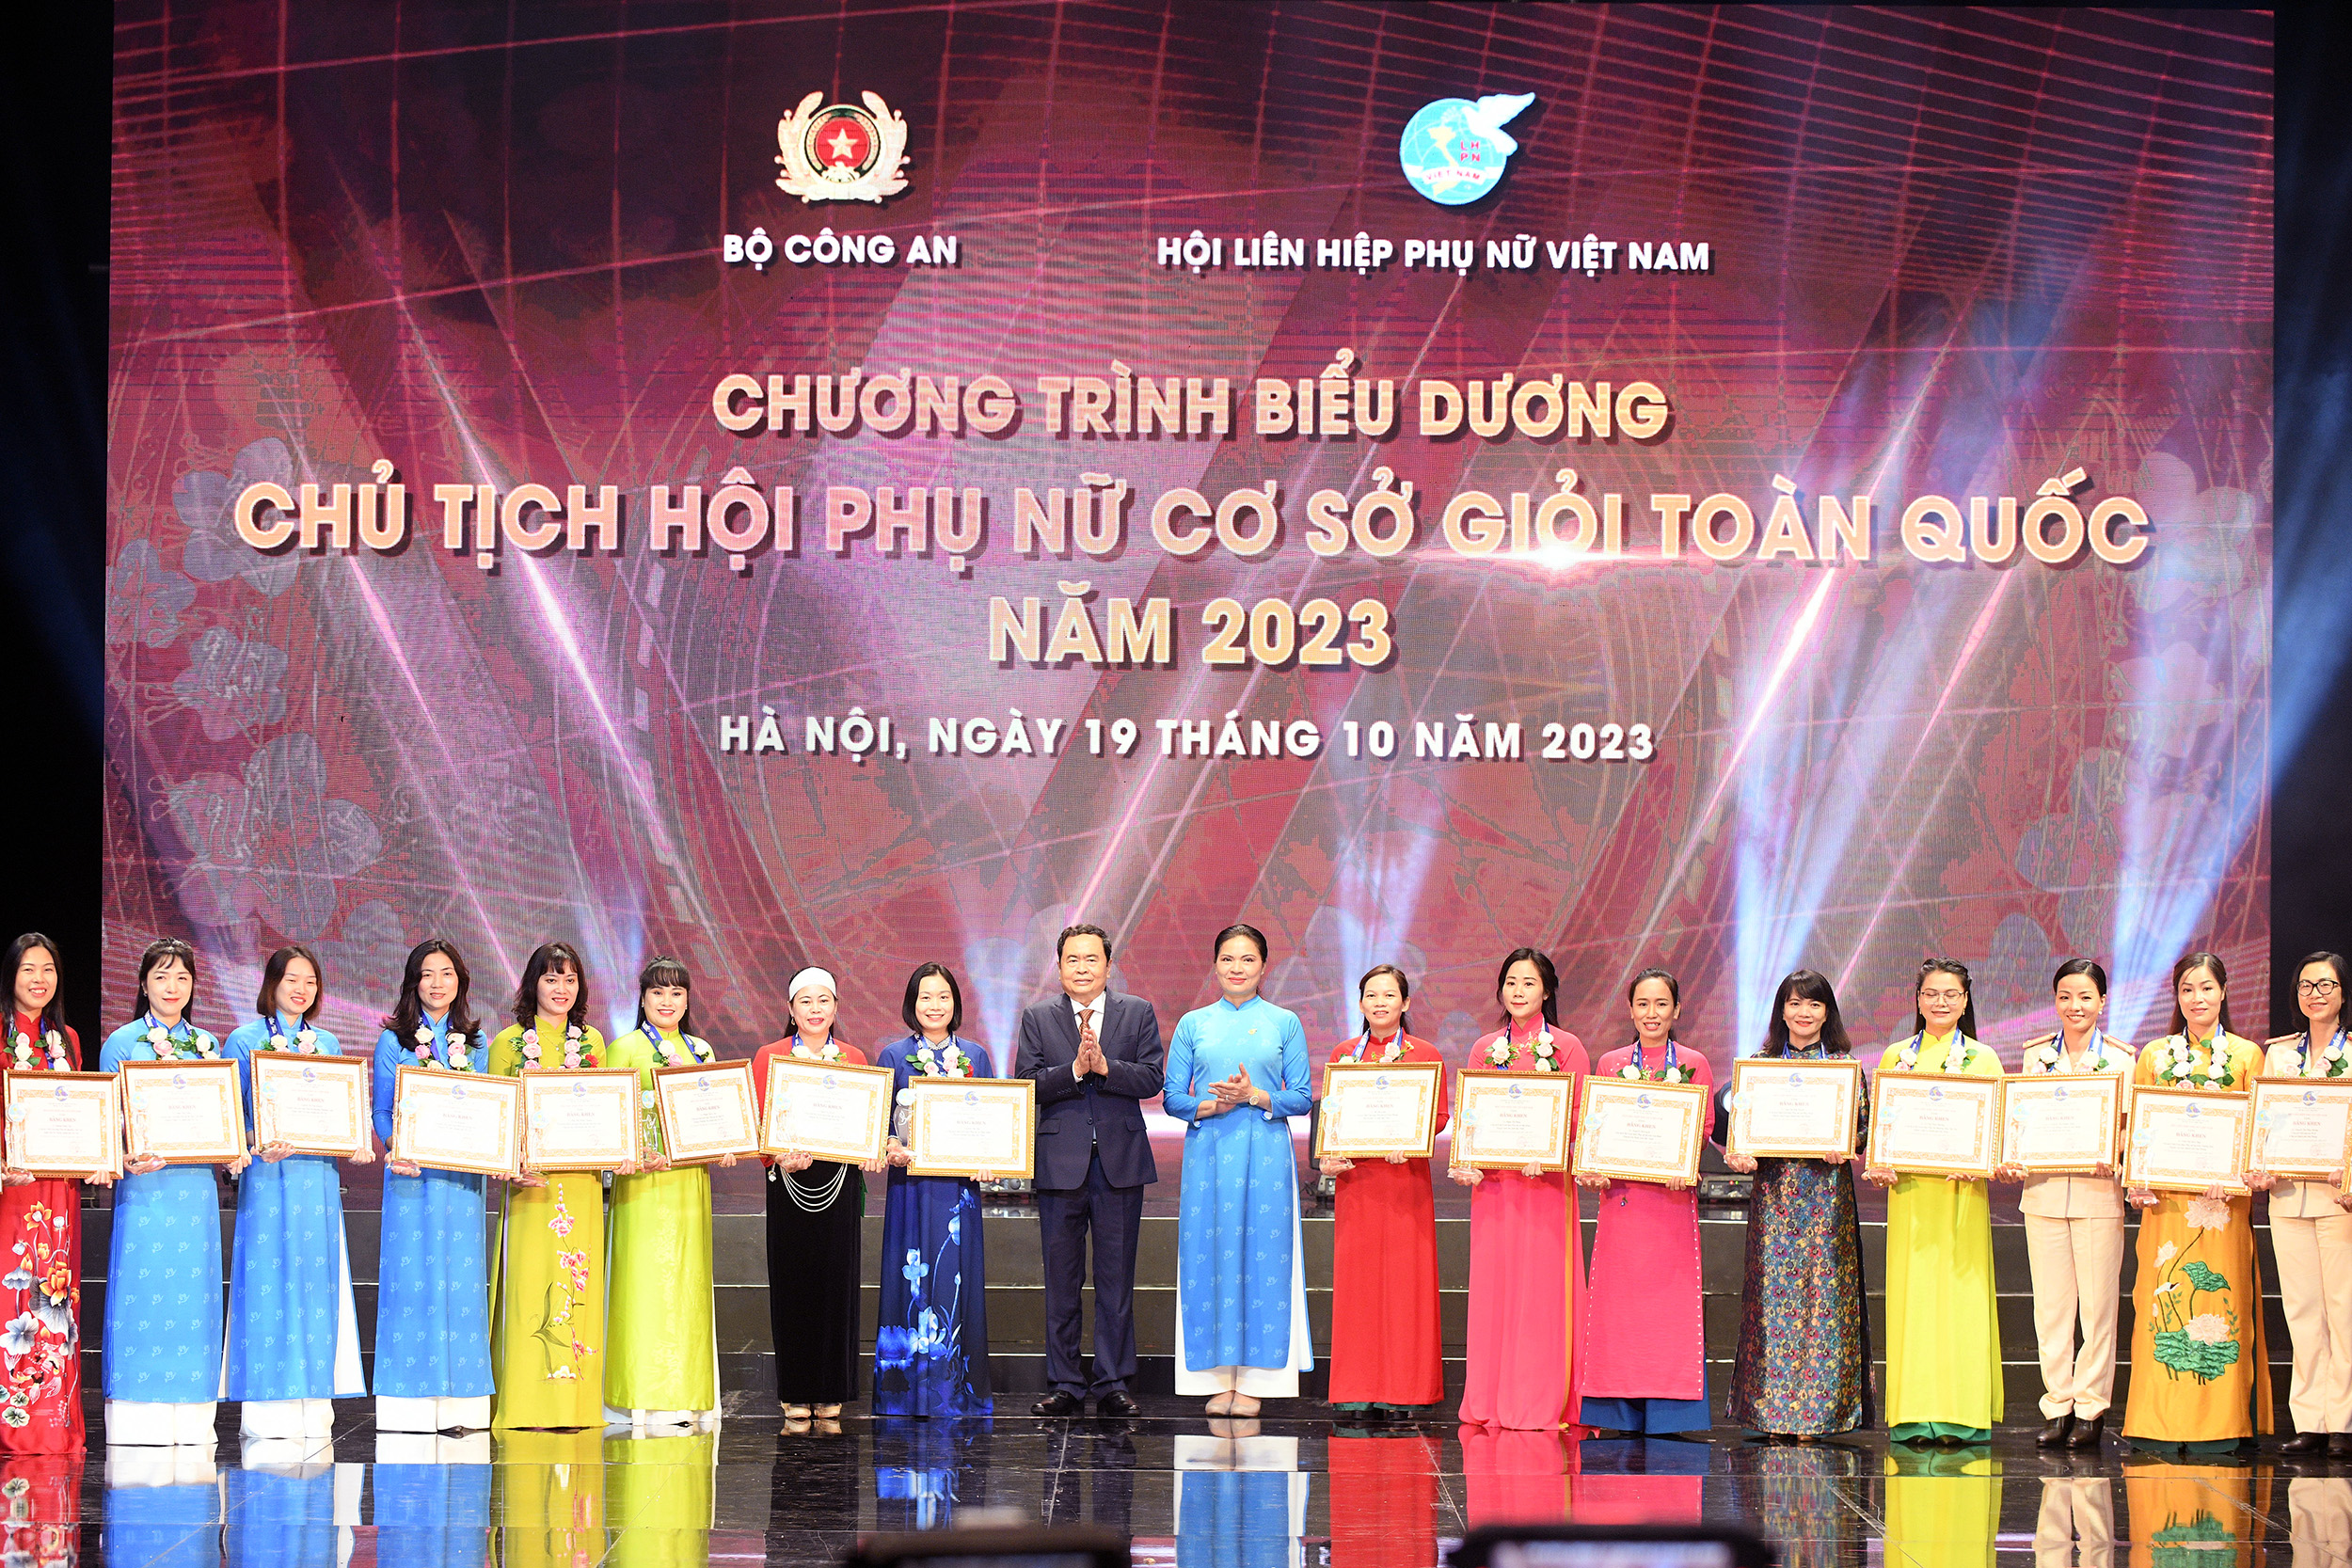 Biểu dương 293 Chủ tịch Hội Phụ nữ cơ sở giỏi toàn quốc năm 2023